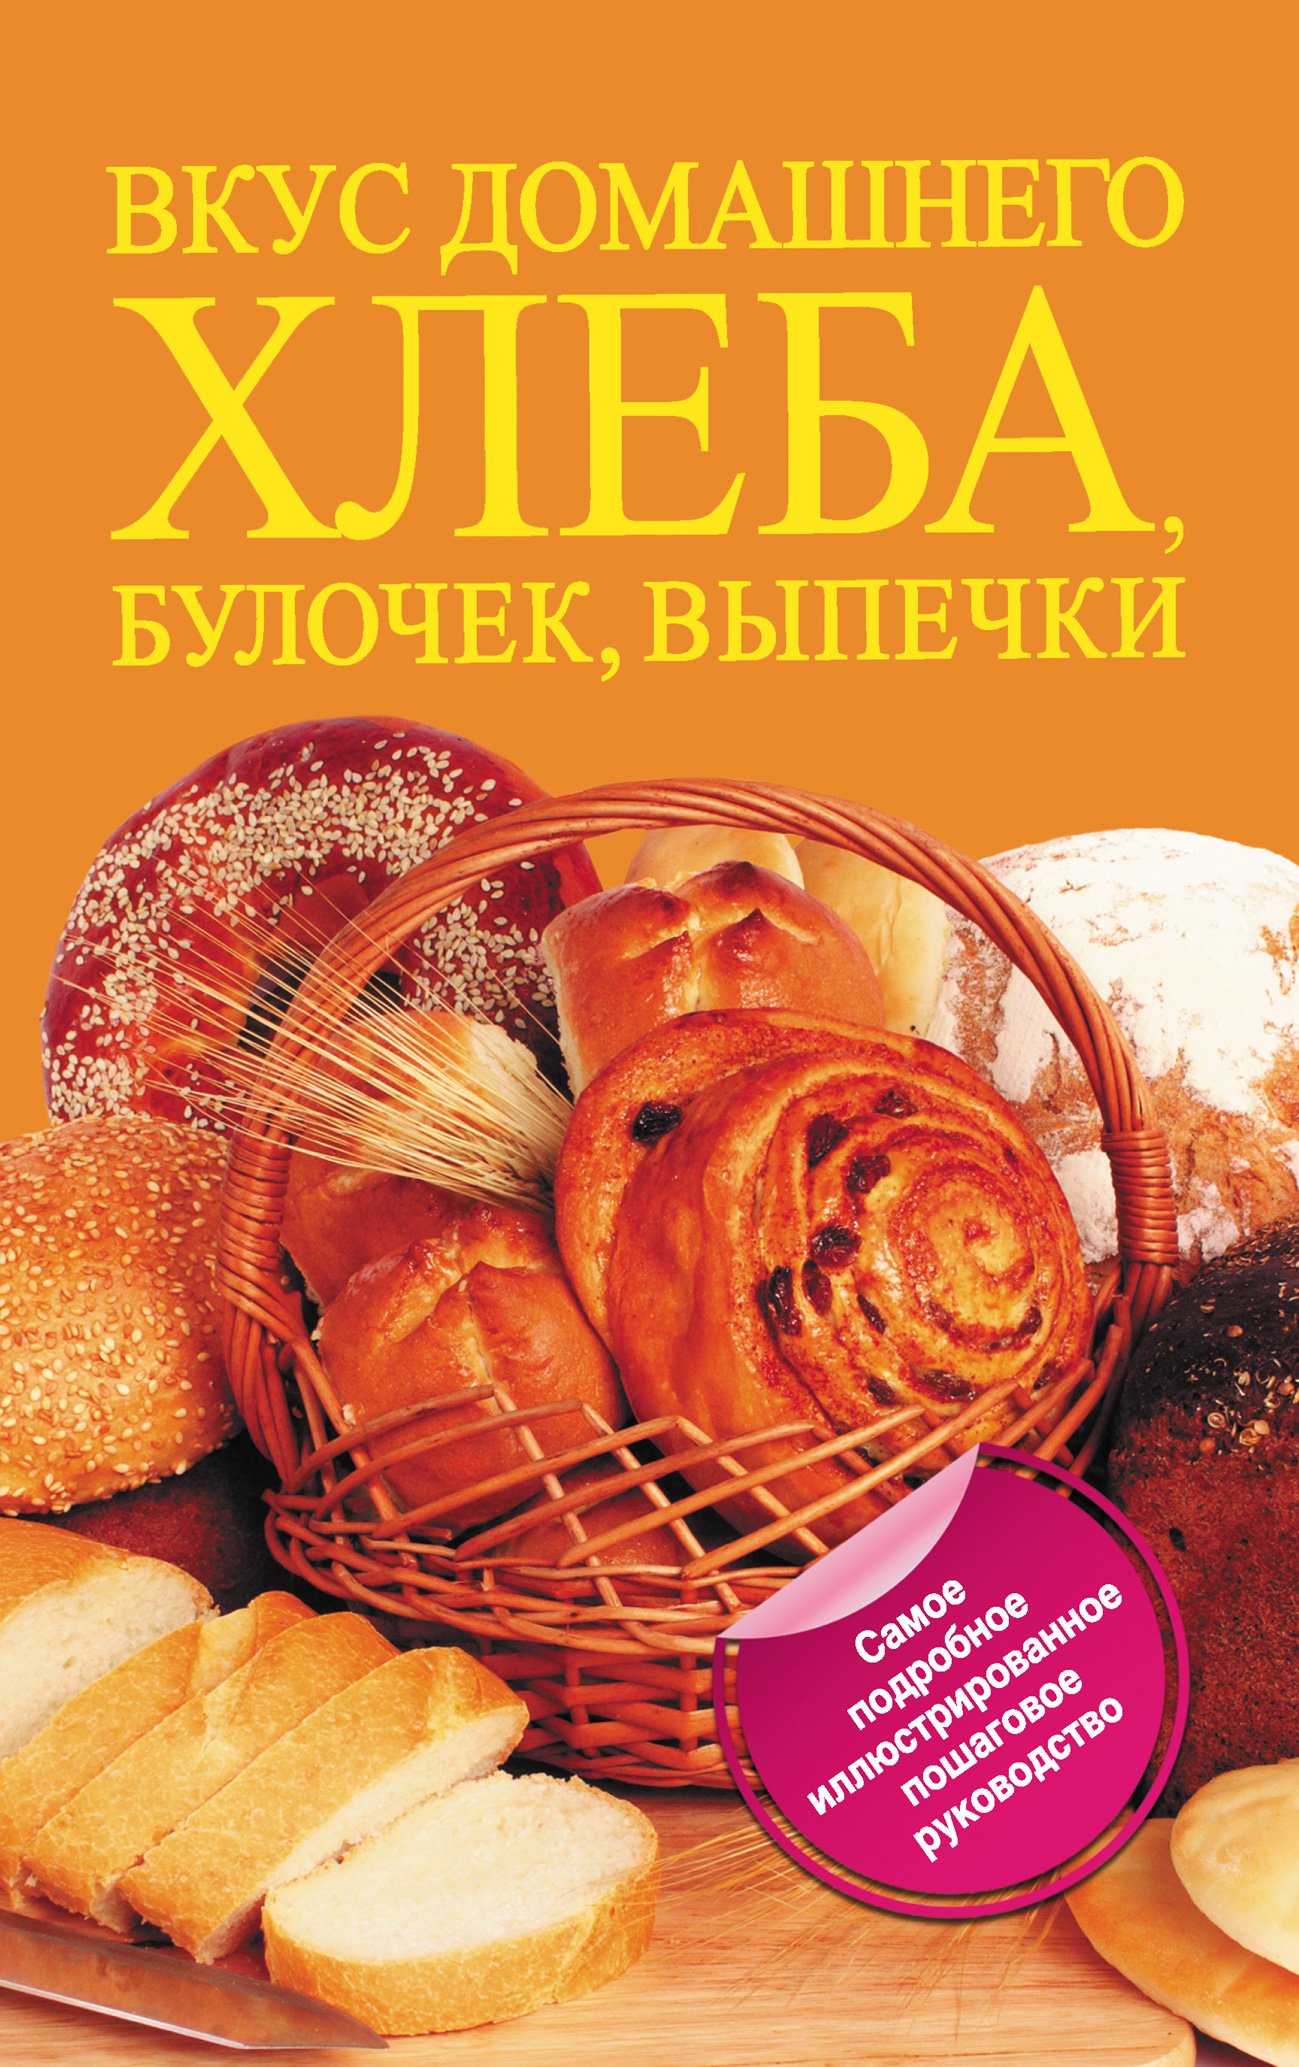 Читать книгу булочка. Вкус домашнего хлеба, булочек, выпечки. Книга "выпечка". Книги о выпечке хлеба. Книга рецептов выпечки.